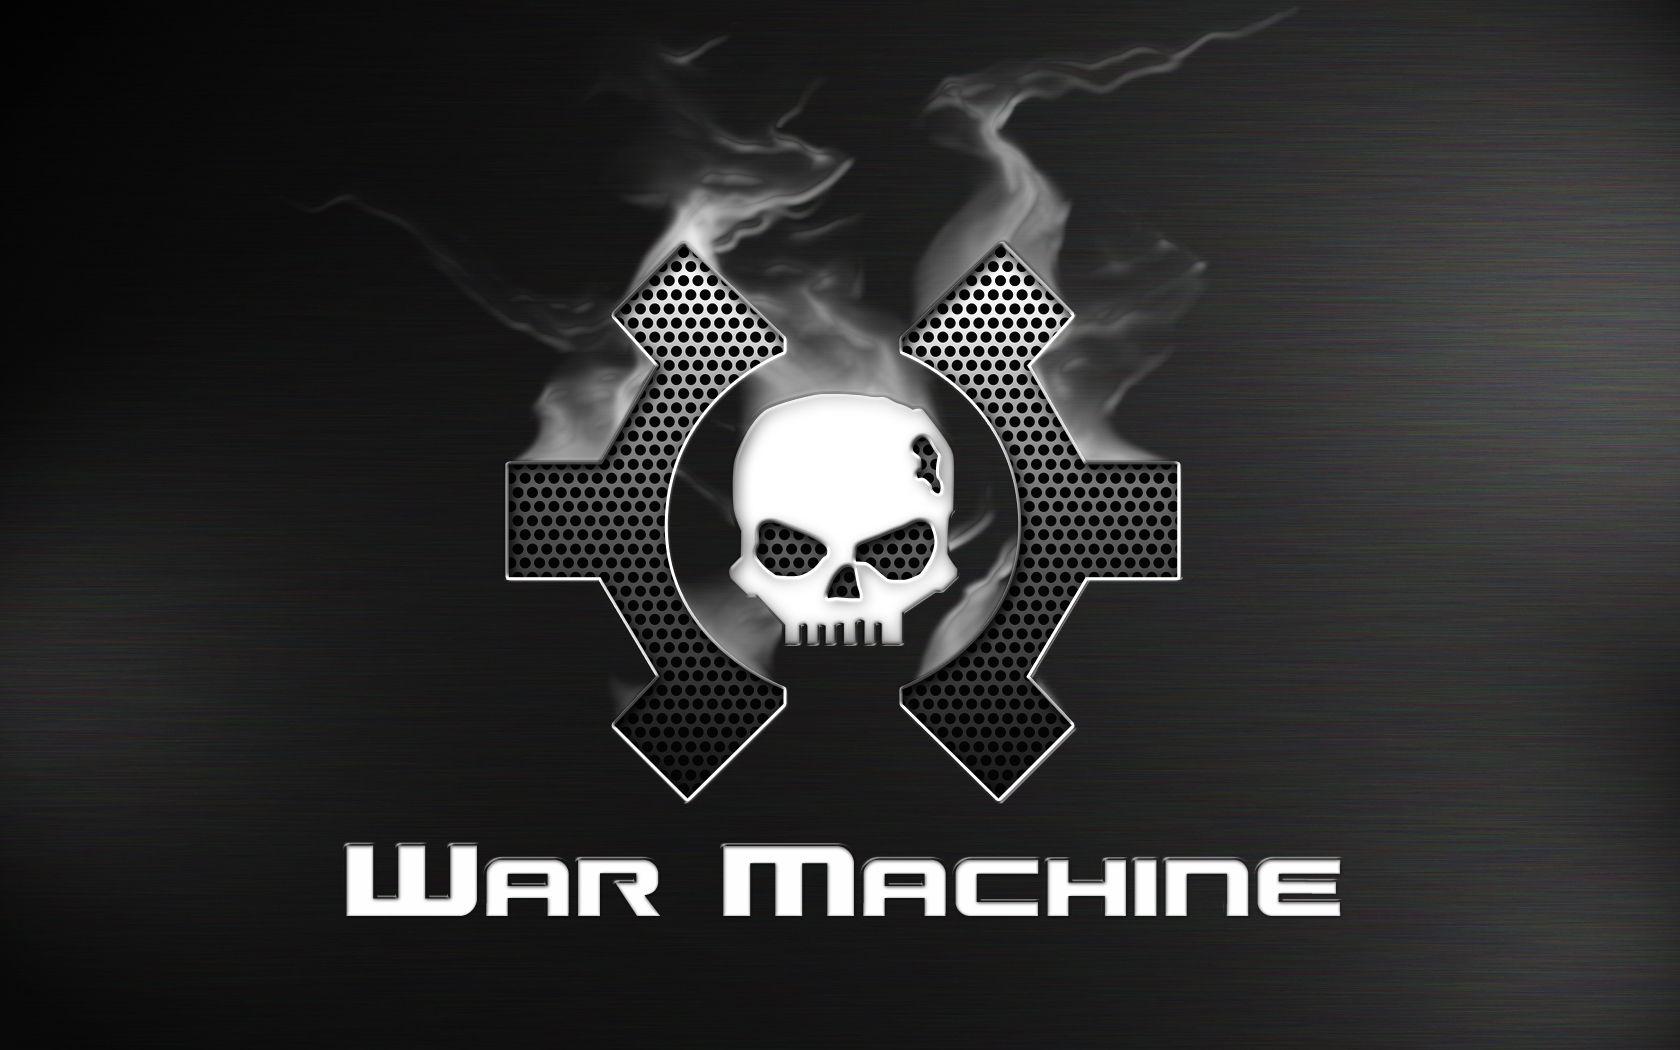 War Machine/ James Rhodey image War Machine HD wallpaper